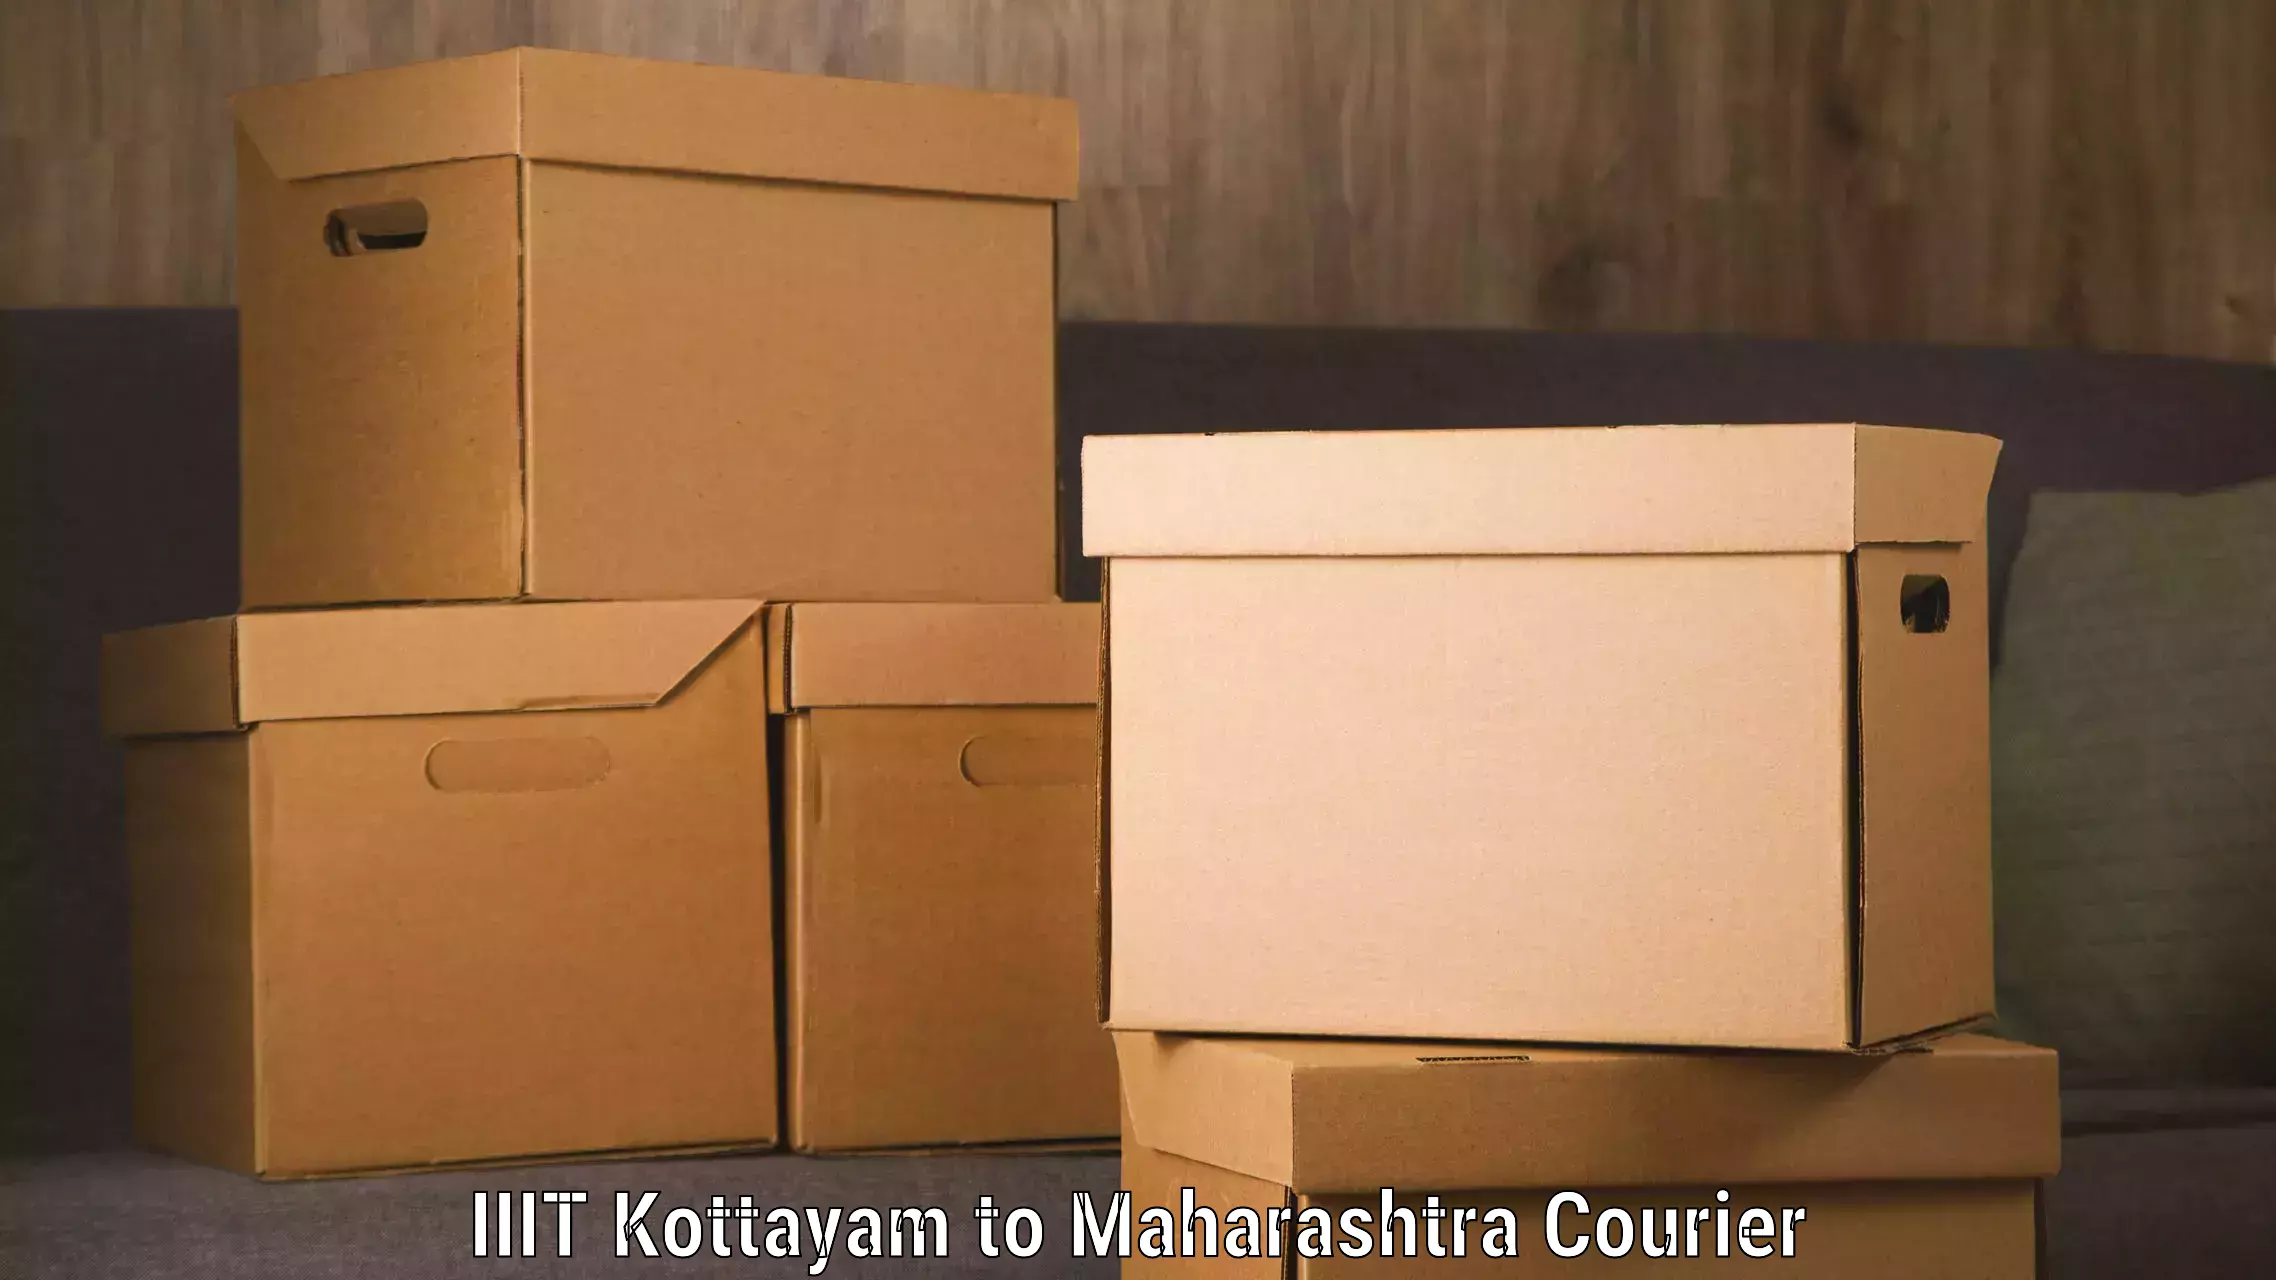 Express courier facilities IIIT Kottayam to Jasai